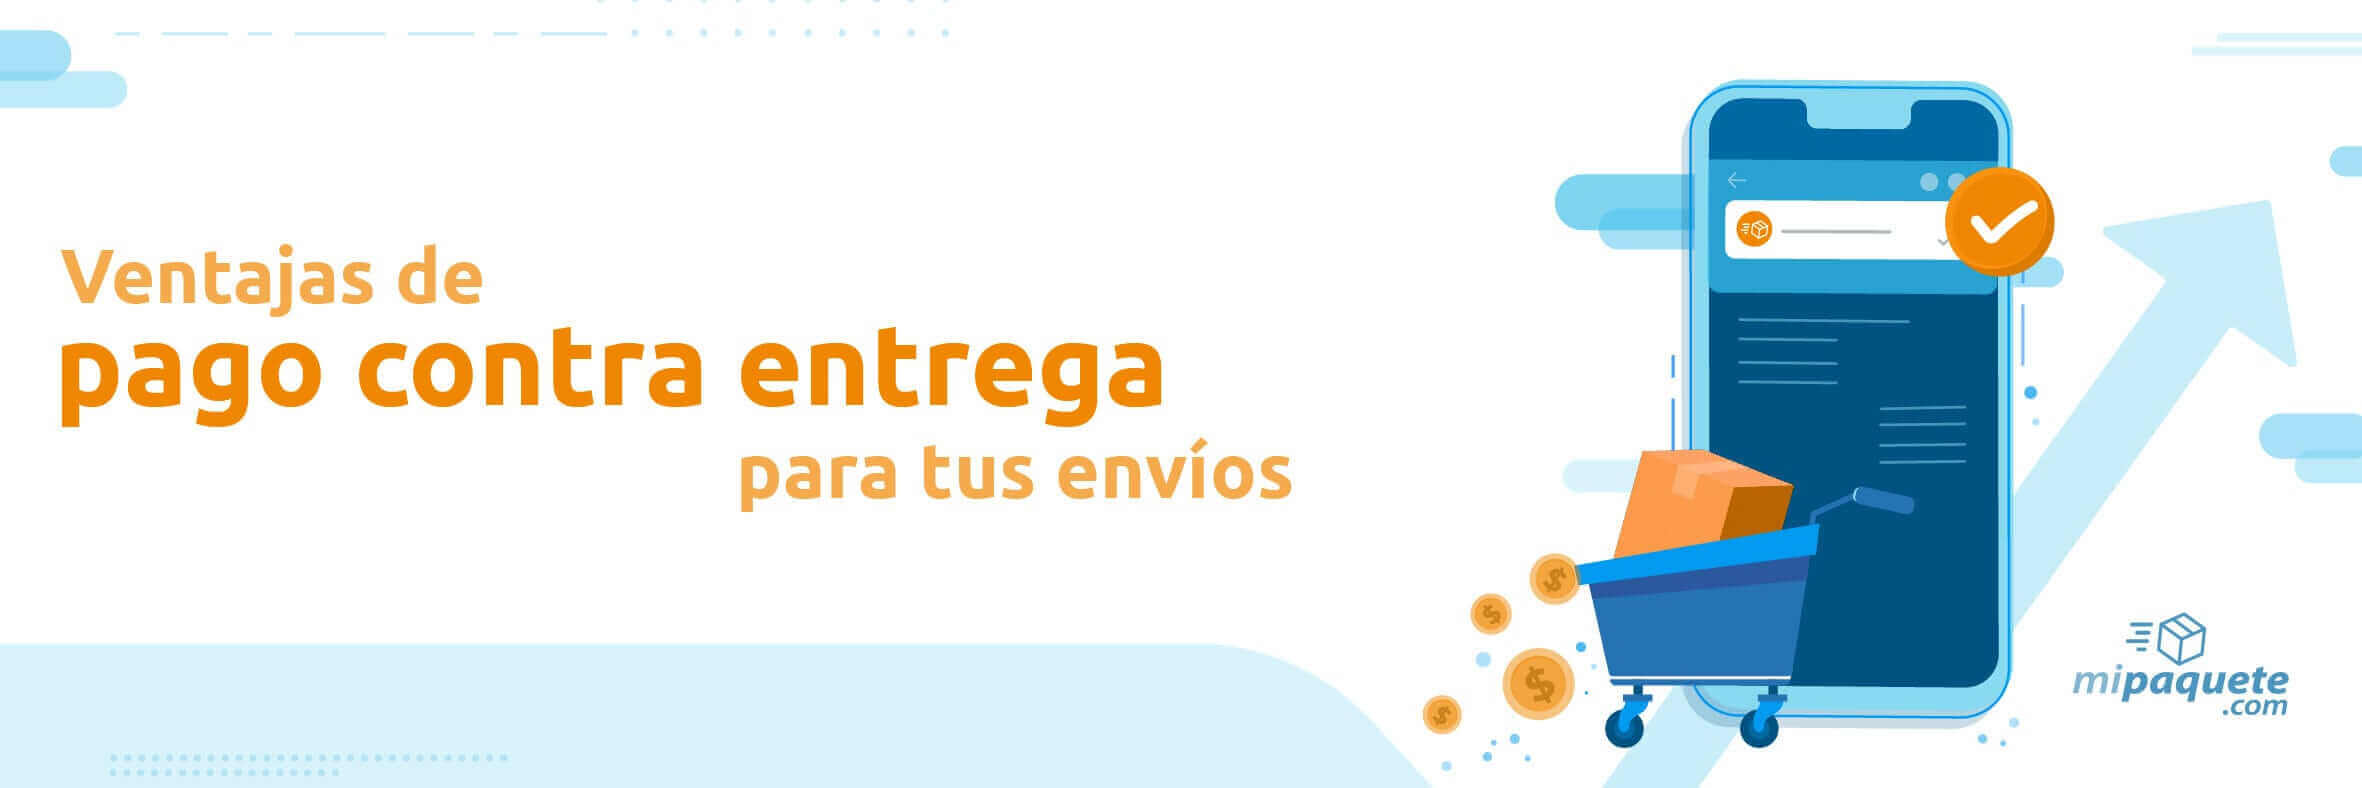 Ventajas-Pago-Contra-Entrega-banner